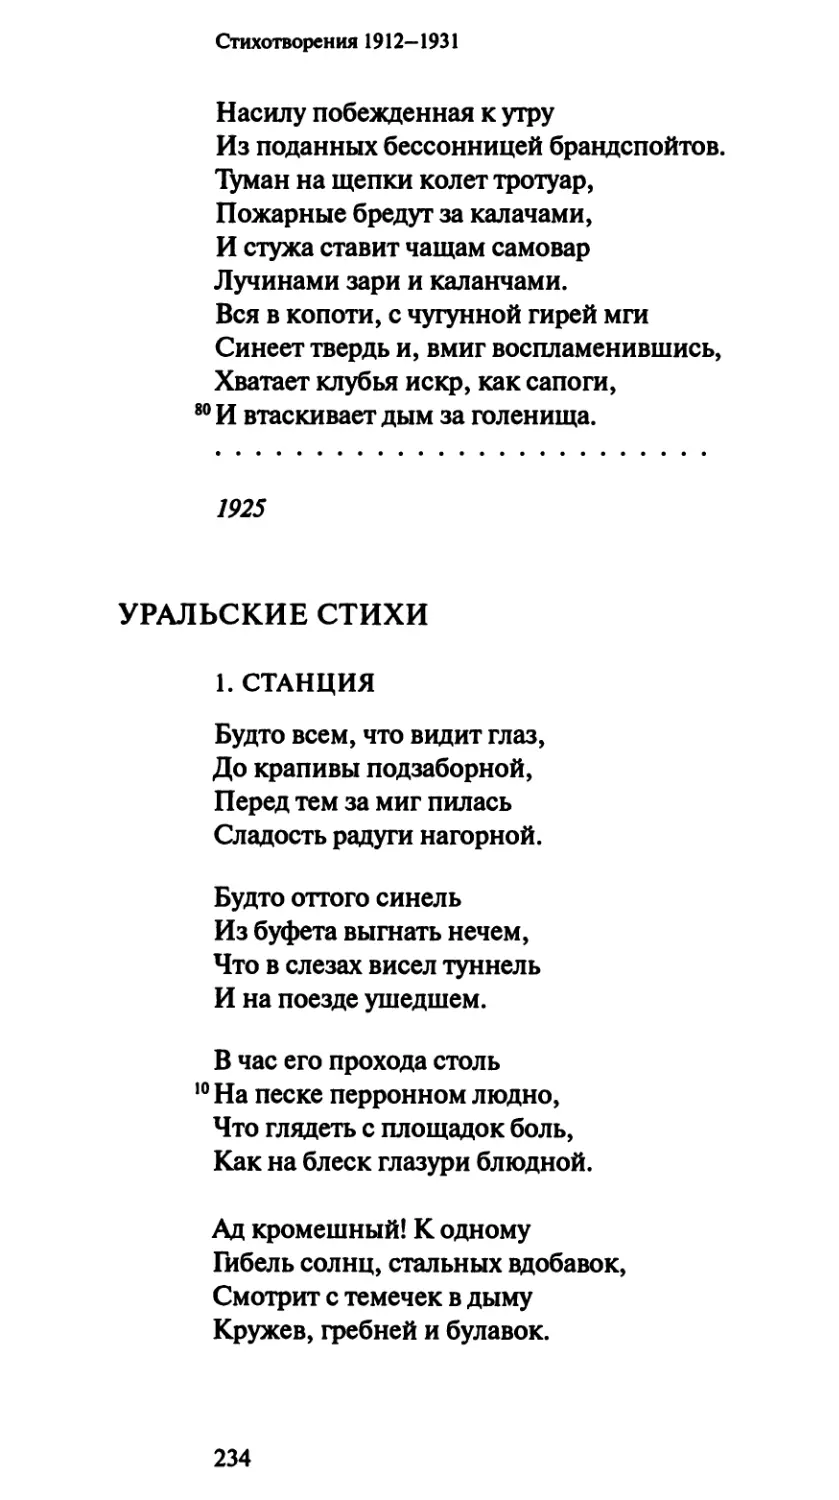 Уральские стихи